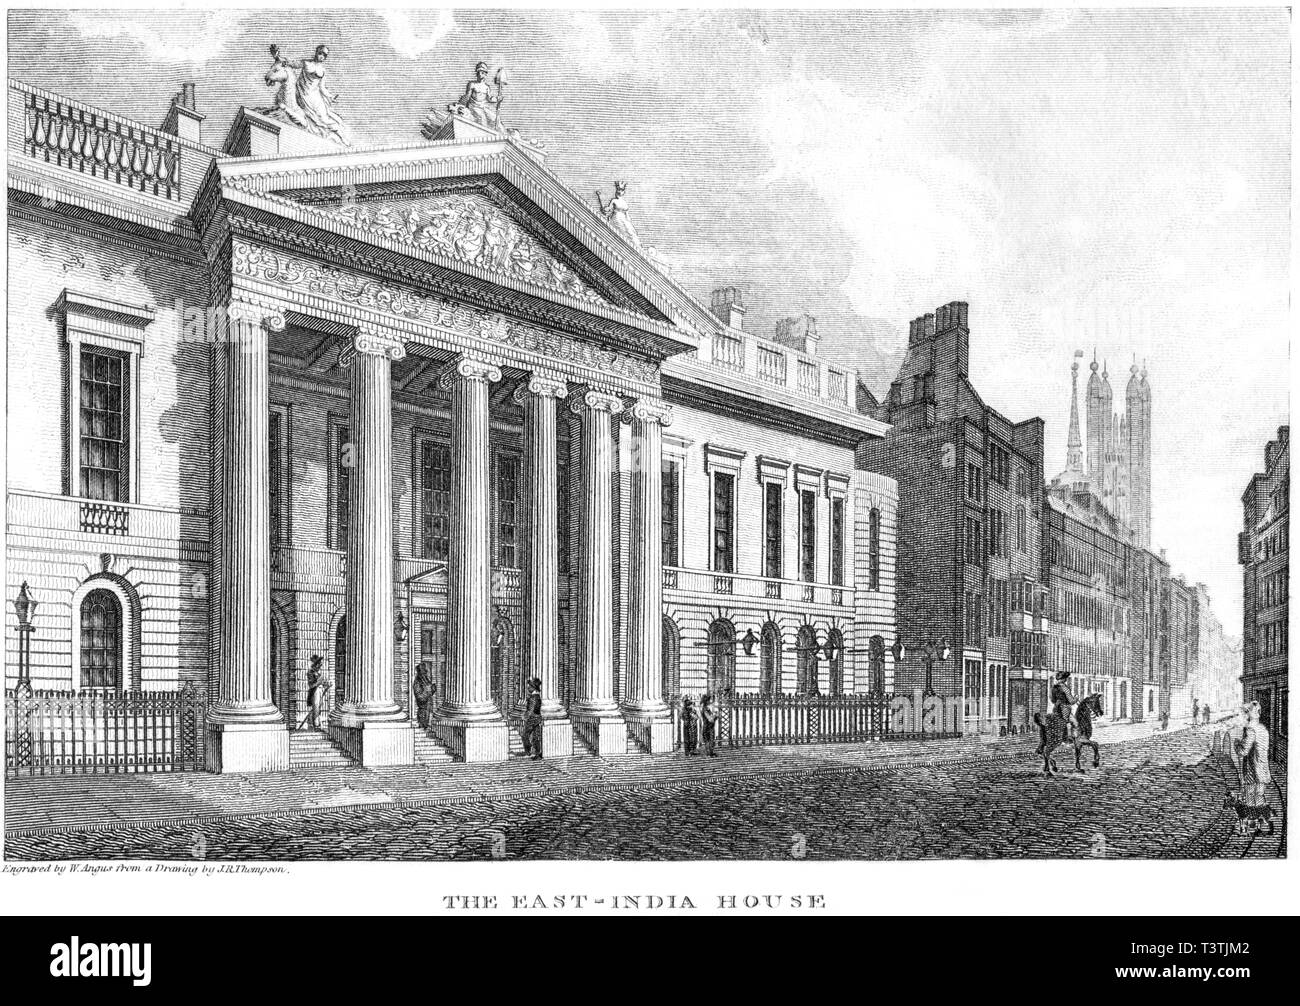 Eine Gravur der East India House, London UK gescannt und in hoher Auflösung aus einem Buch 1814 veröffentlicht. Glaubten copyright frei. Stockfoto